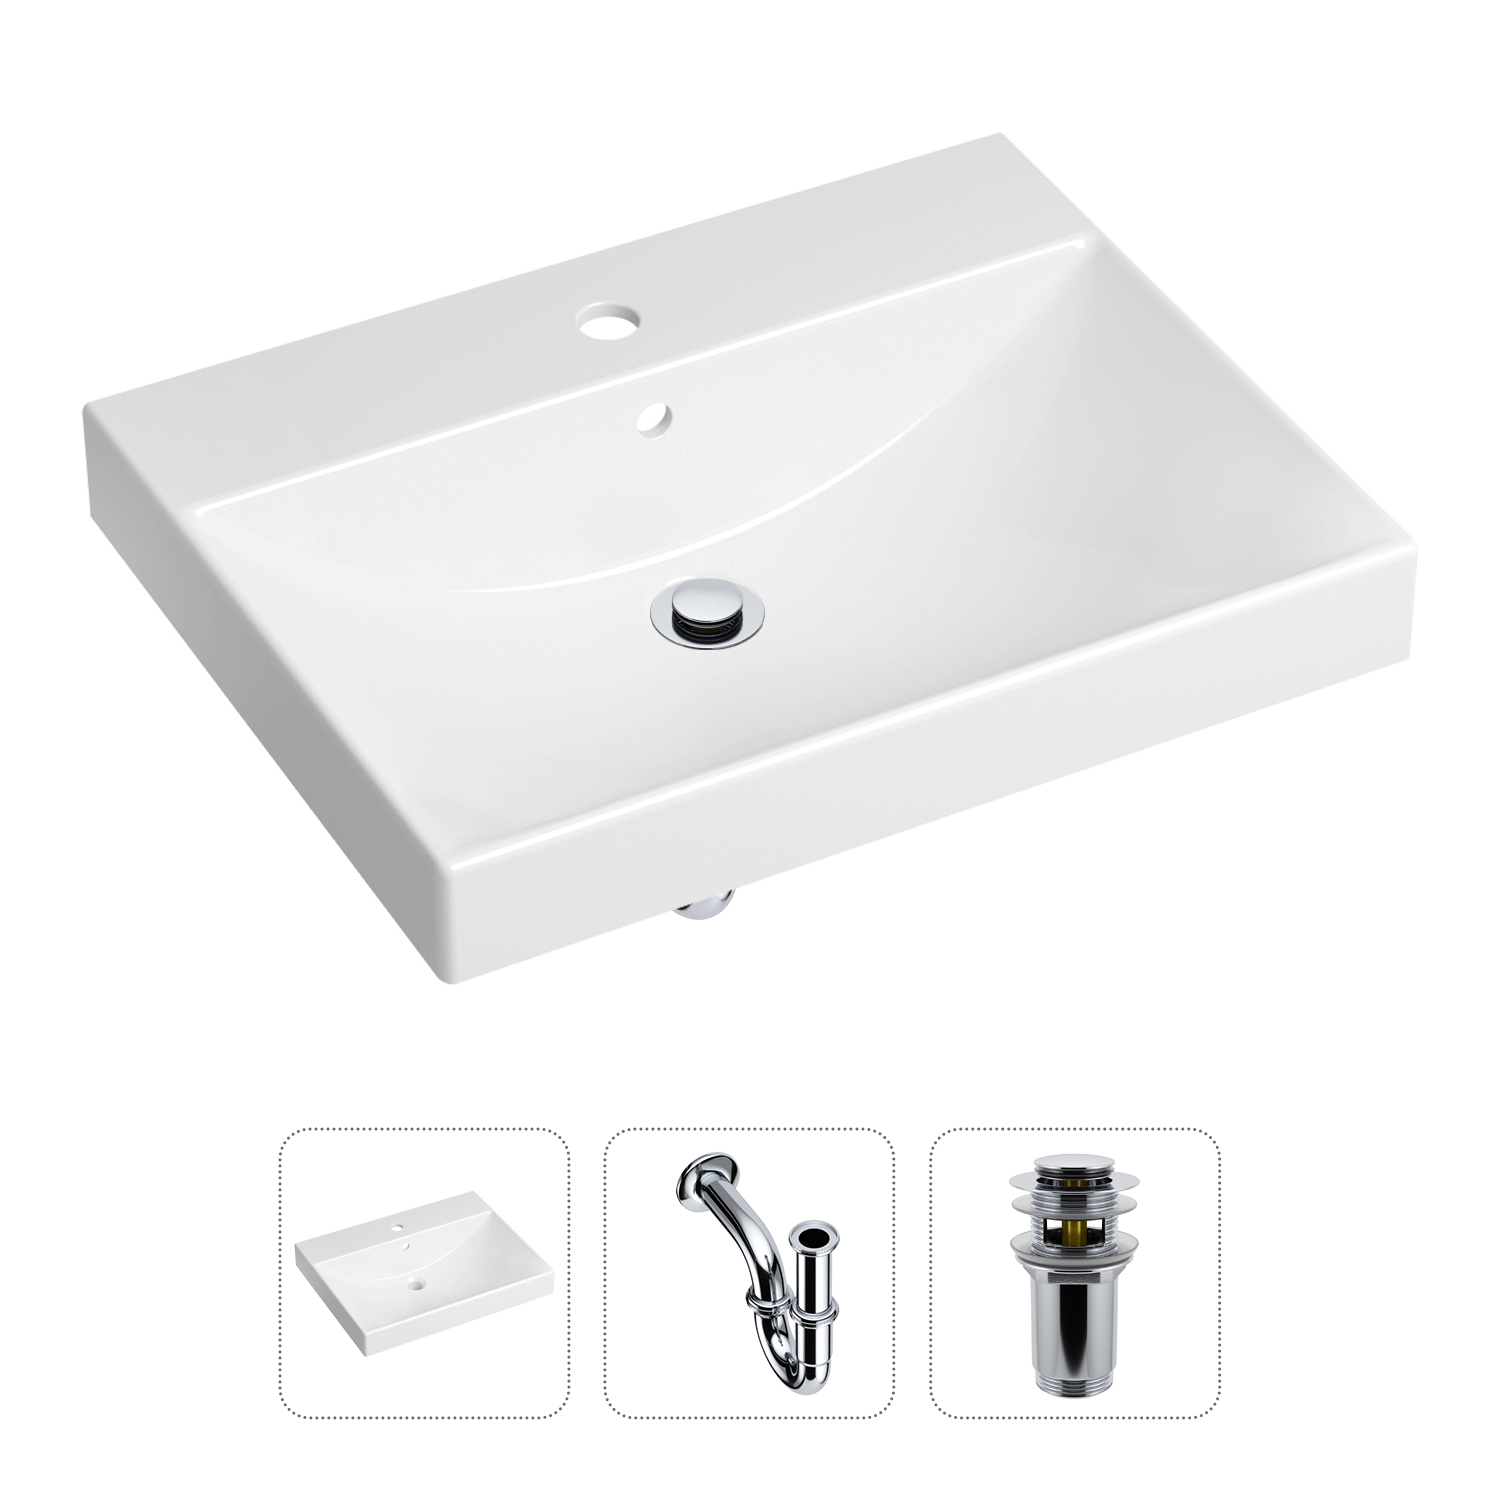 Комплект 3 в 1 Lavinia Boho Bathroom Sink 21520542: раковина 60 см, сифон, донный клапан